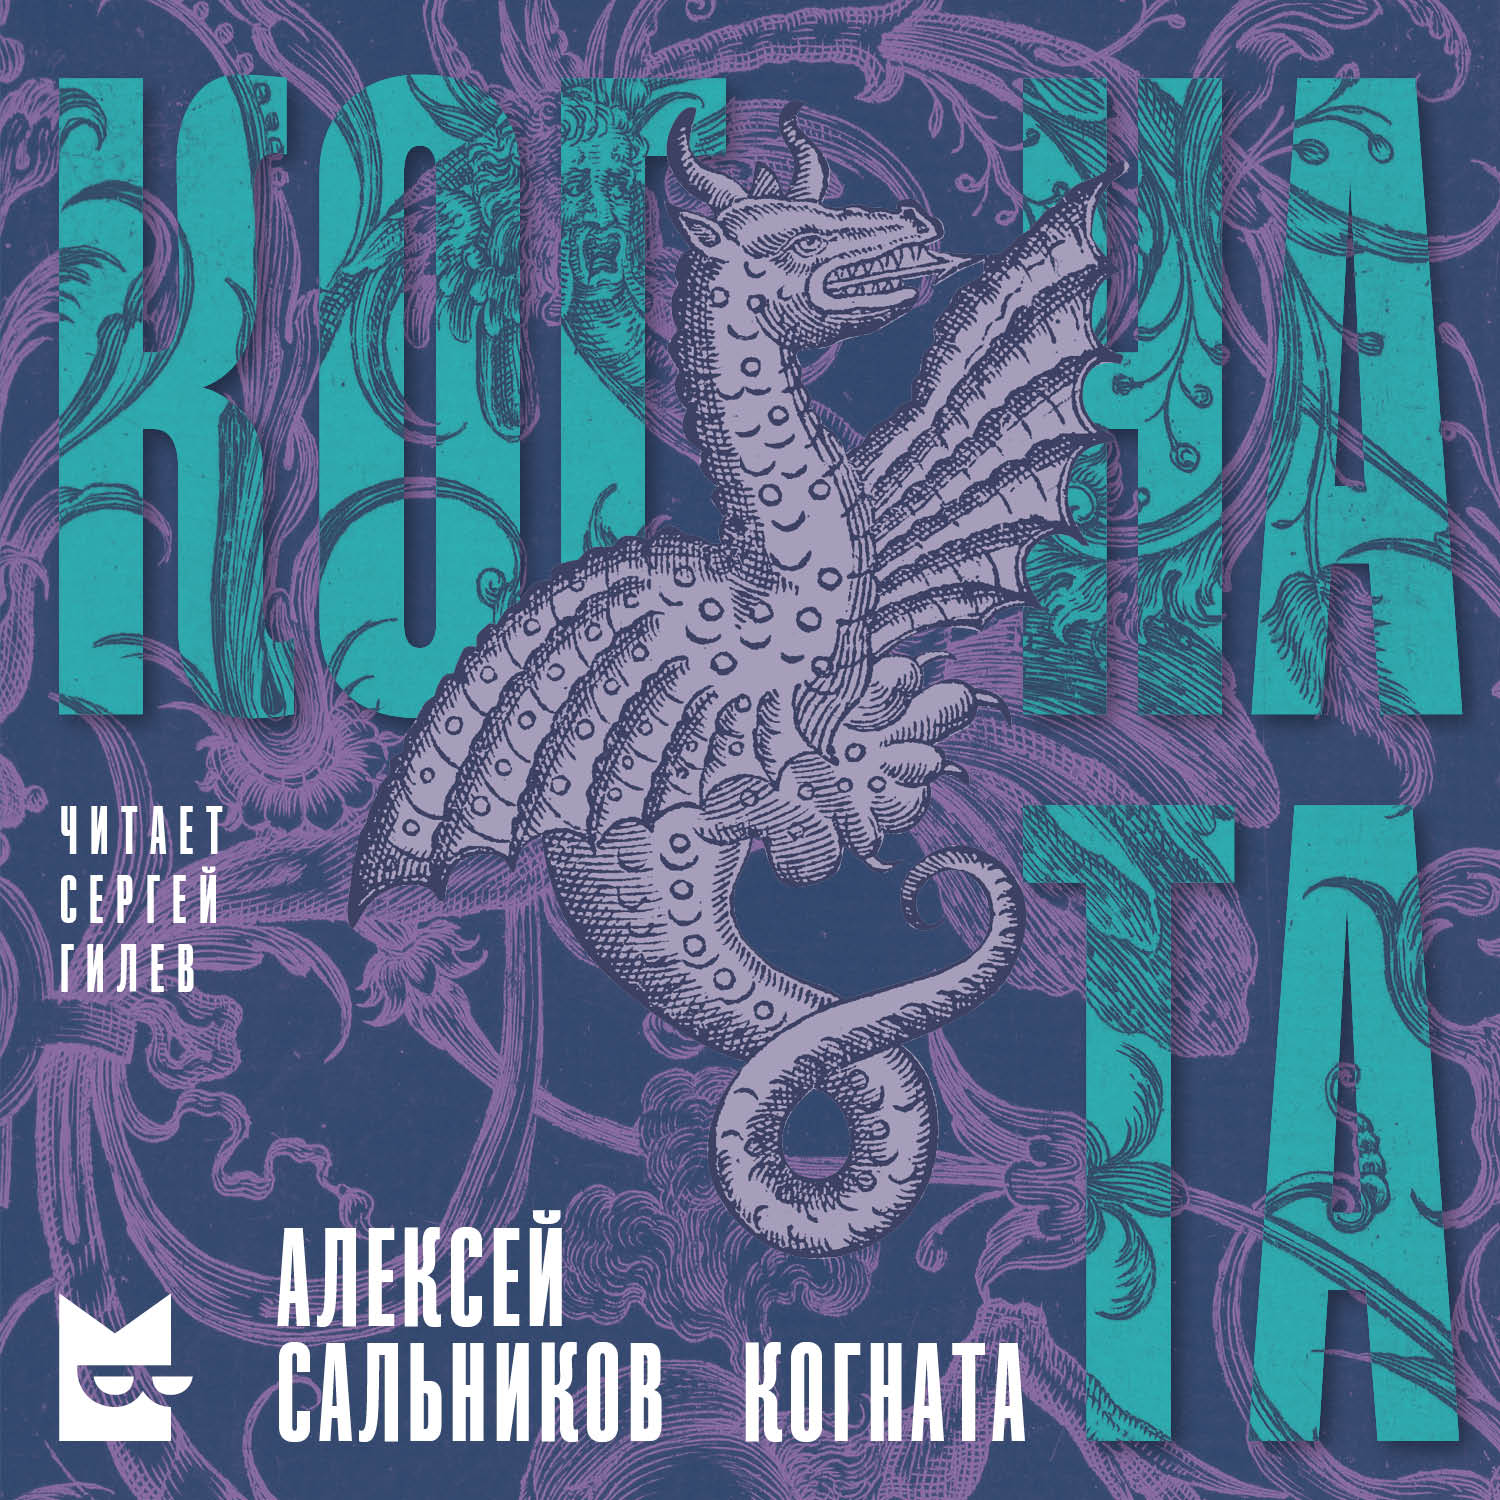 В Казахстане появился новый книжный сериал, доступный по подписке Яндекс Плюс